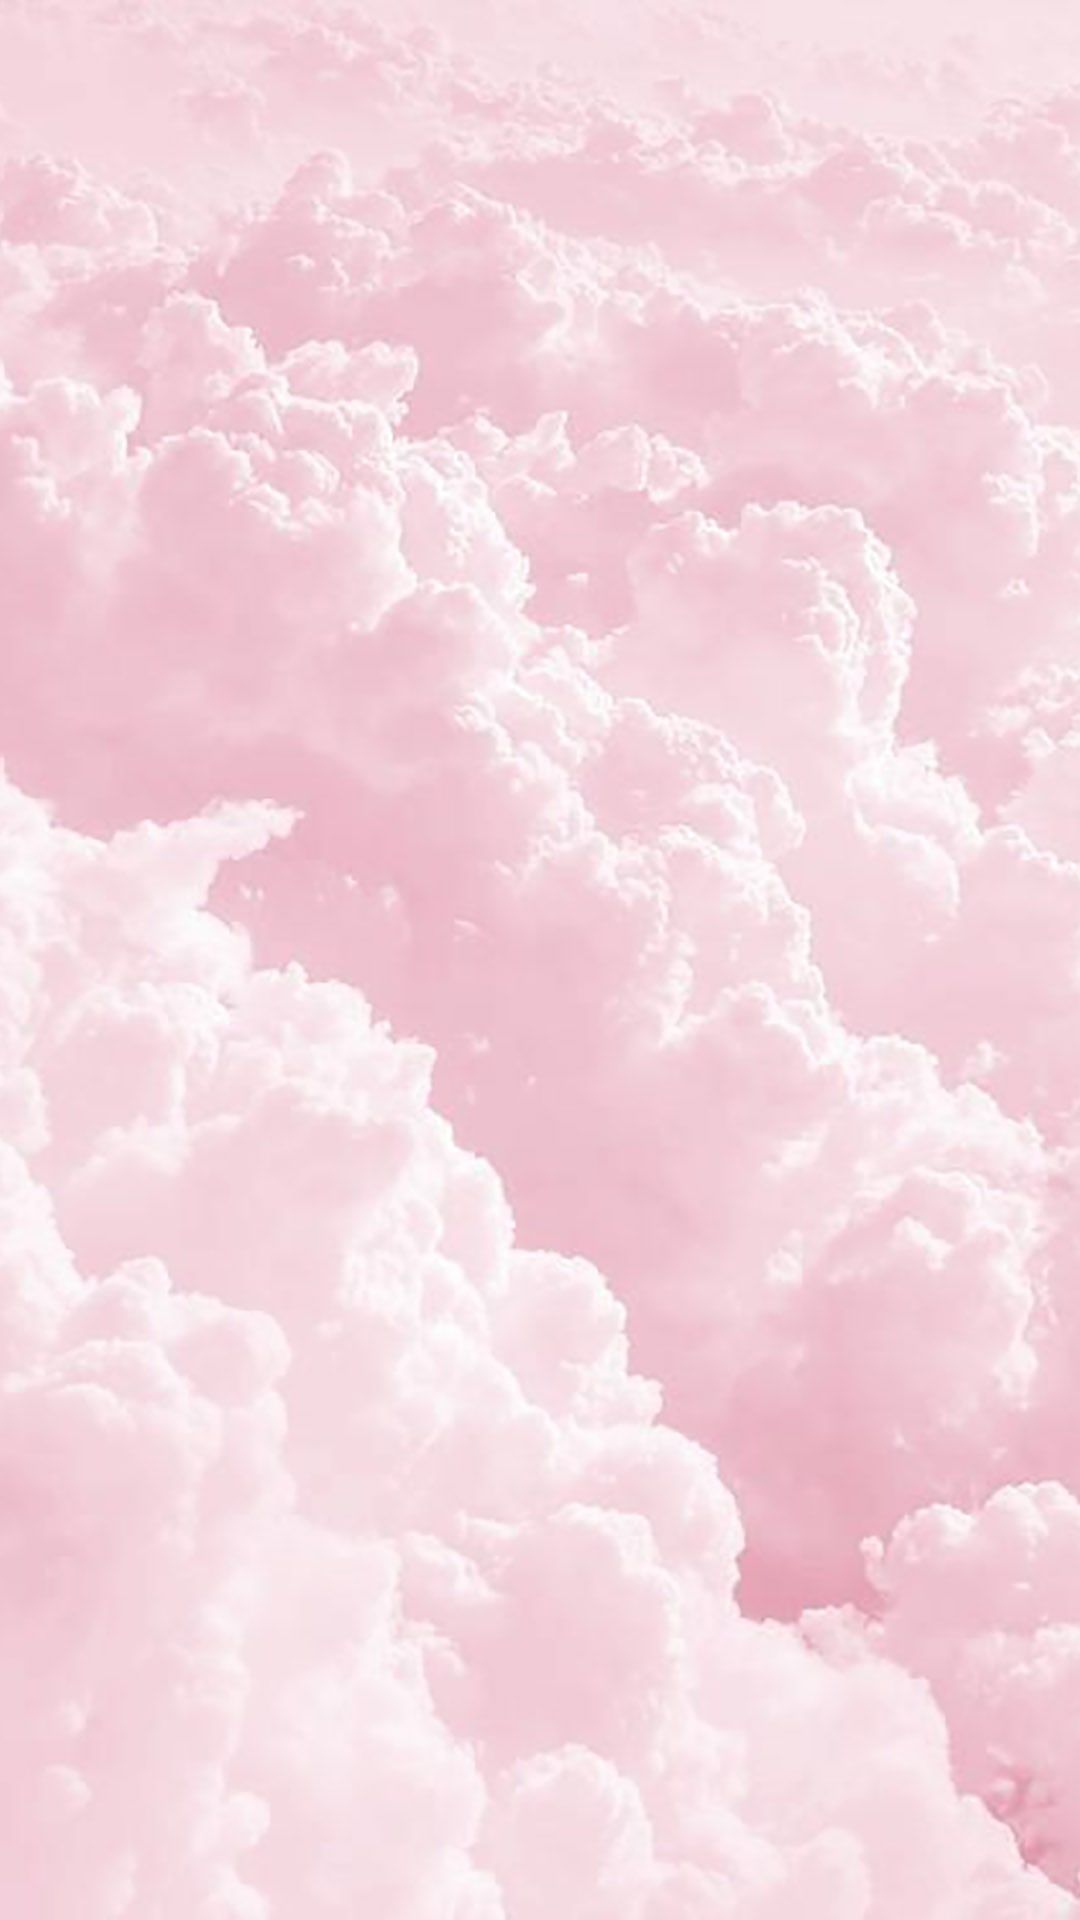 Wallpaper Ponsel iPhone Pink, Wallpaper Ponsel. Pink clouds wallpaper, Pastel pink aesthetic, Pastel pink wallpaper